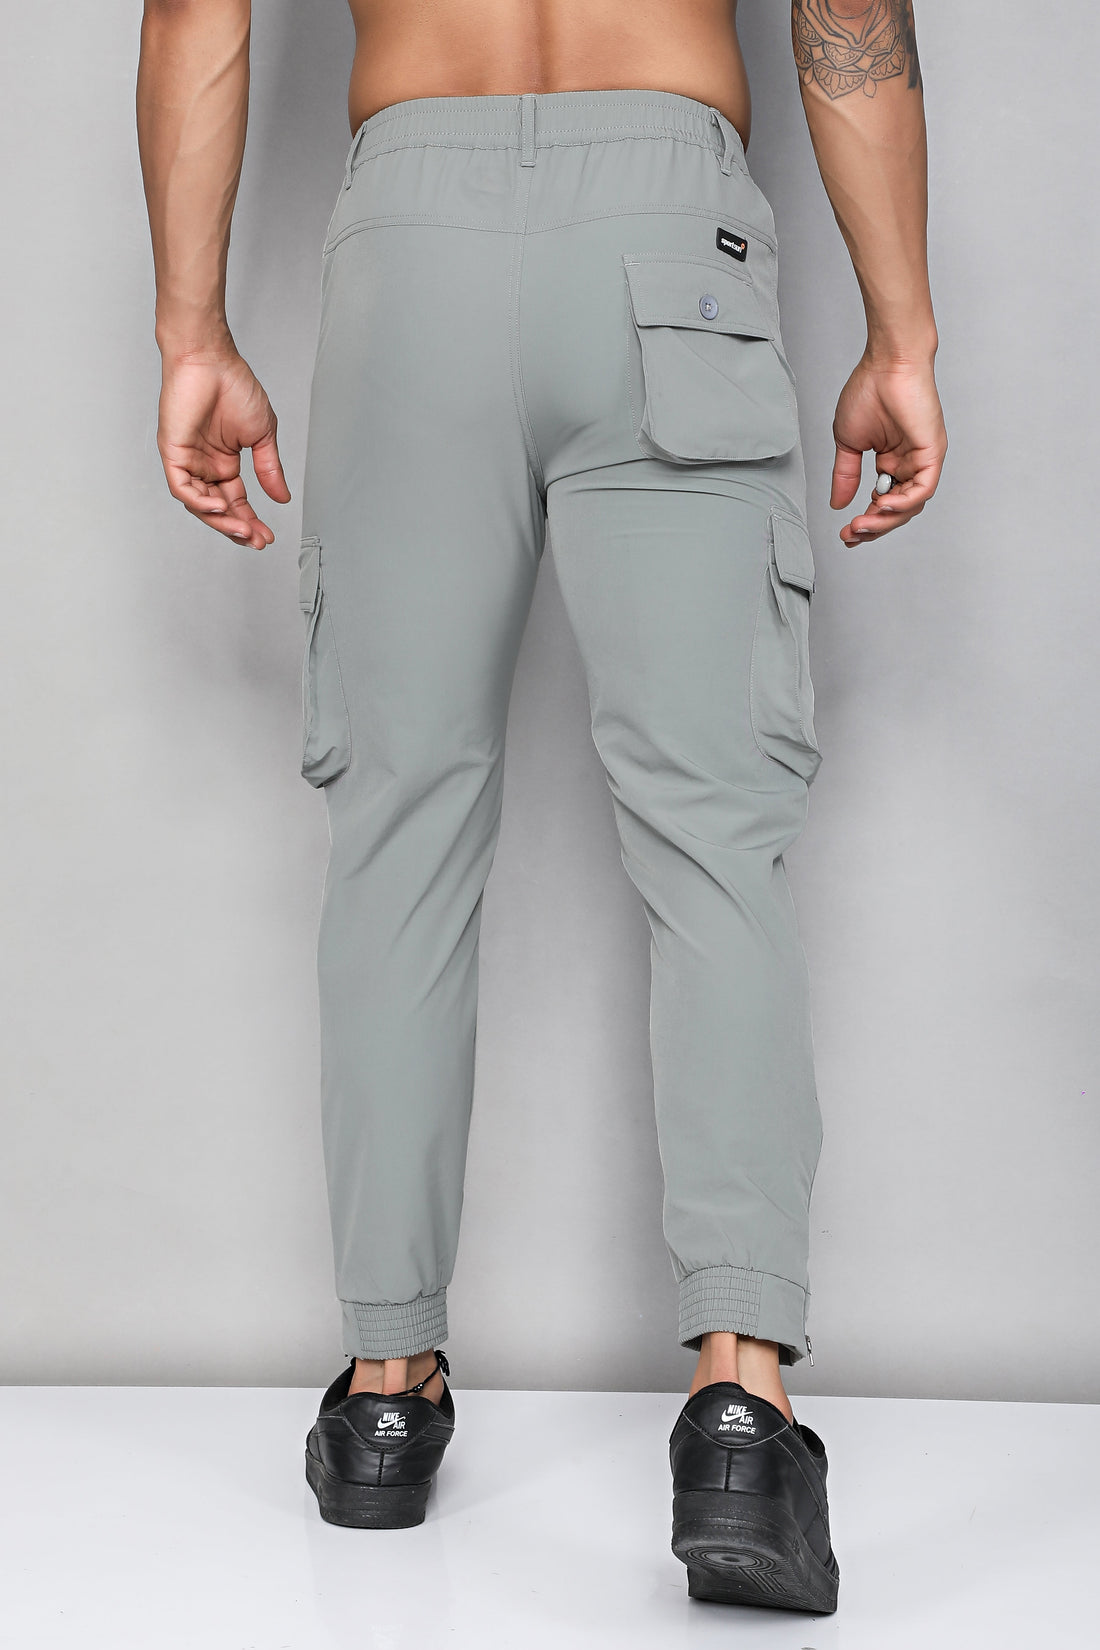 Buy Sapper 6 Pocket Trekking Cargo Pants - Grey online